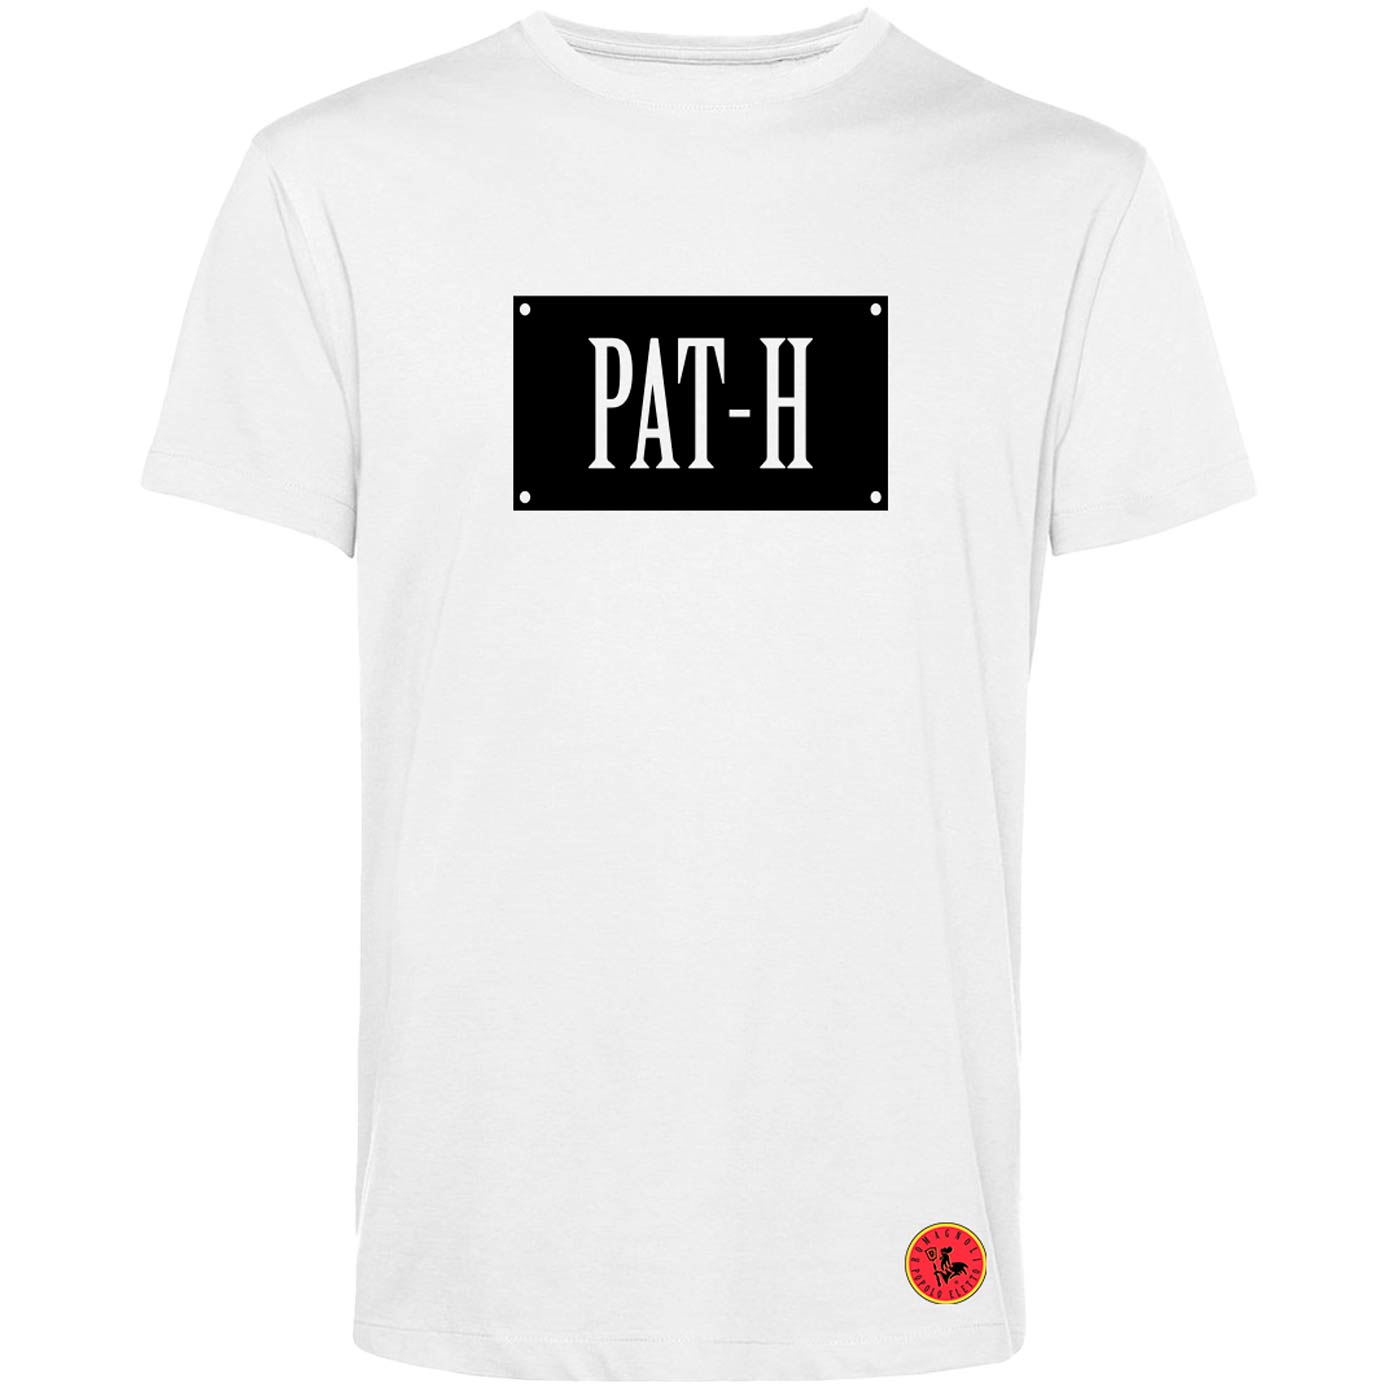 PAT-H